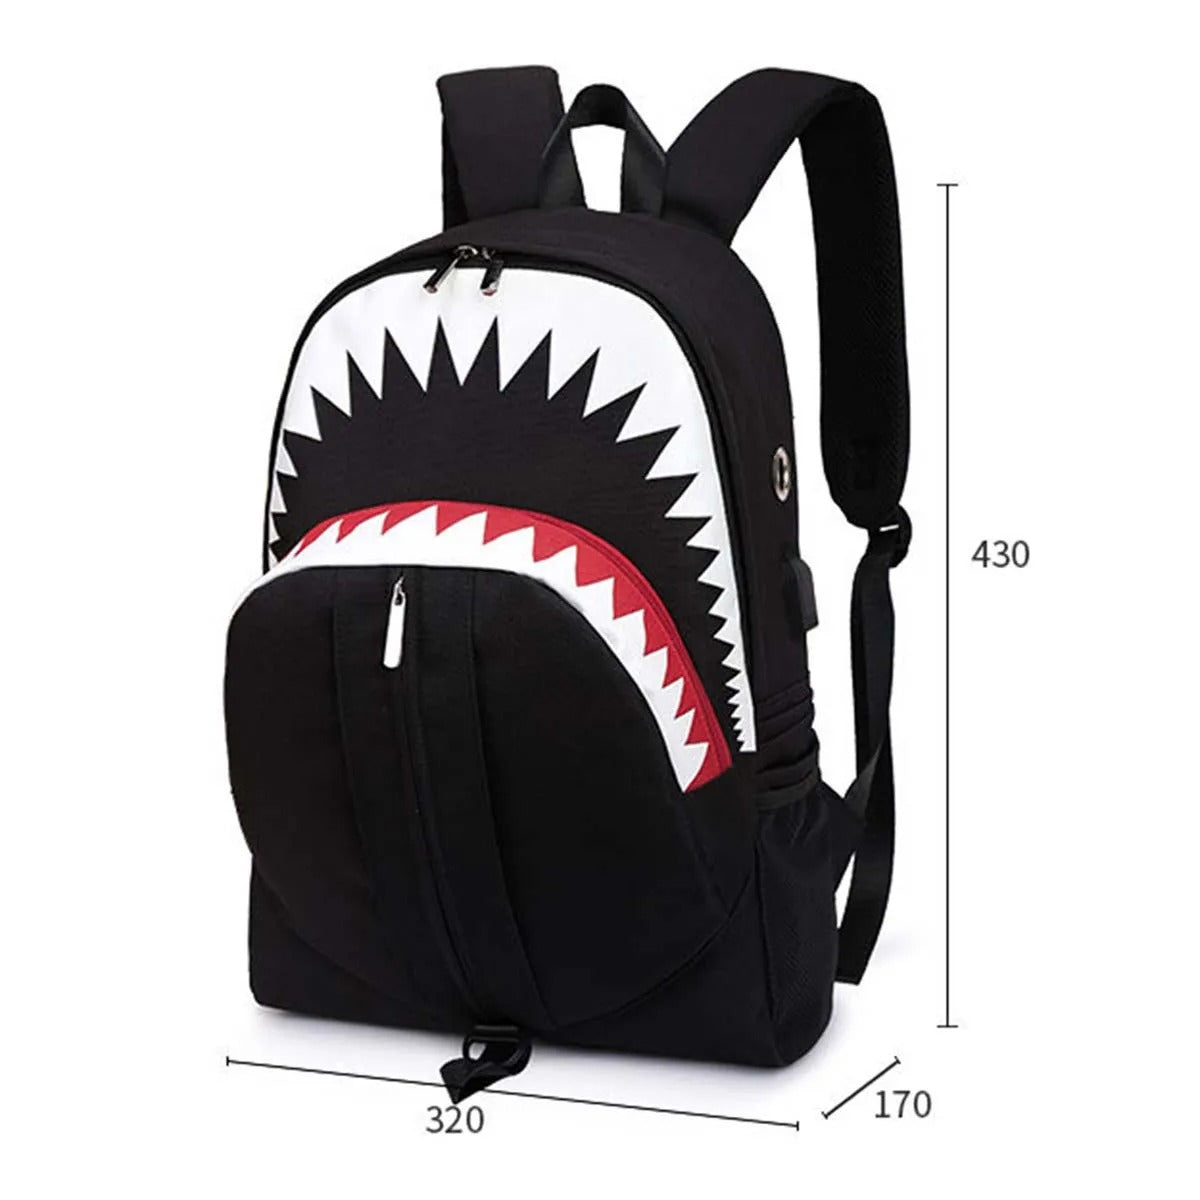 Neon Shark Backpack - Black